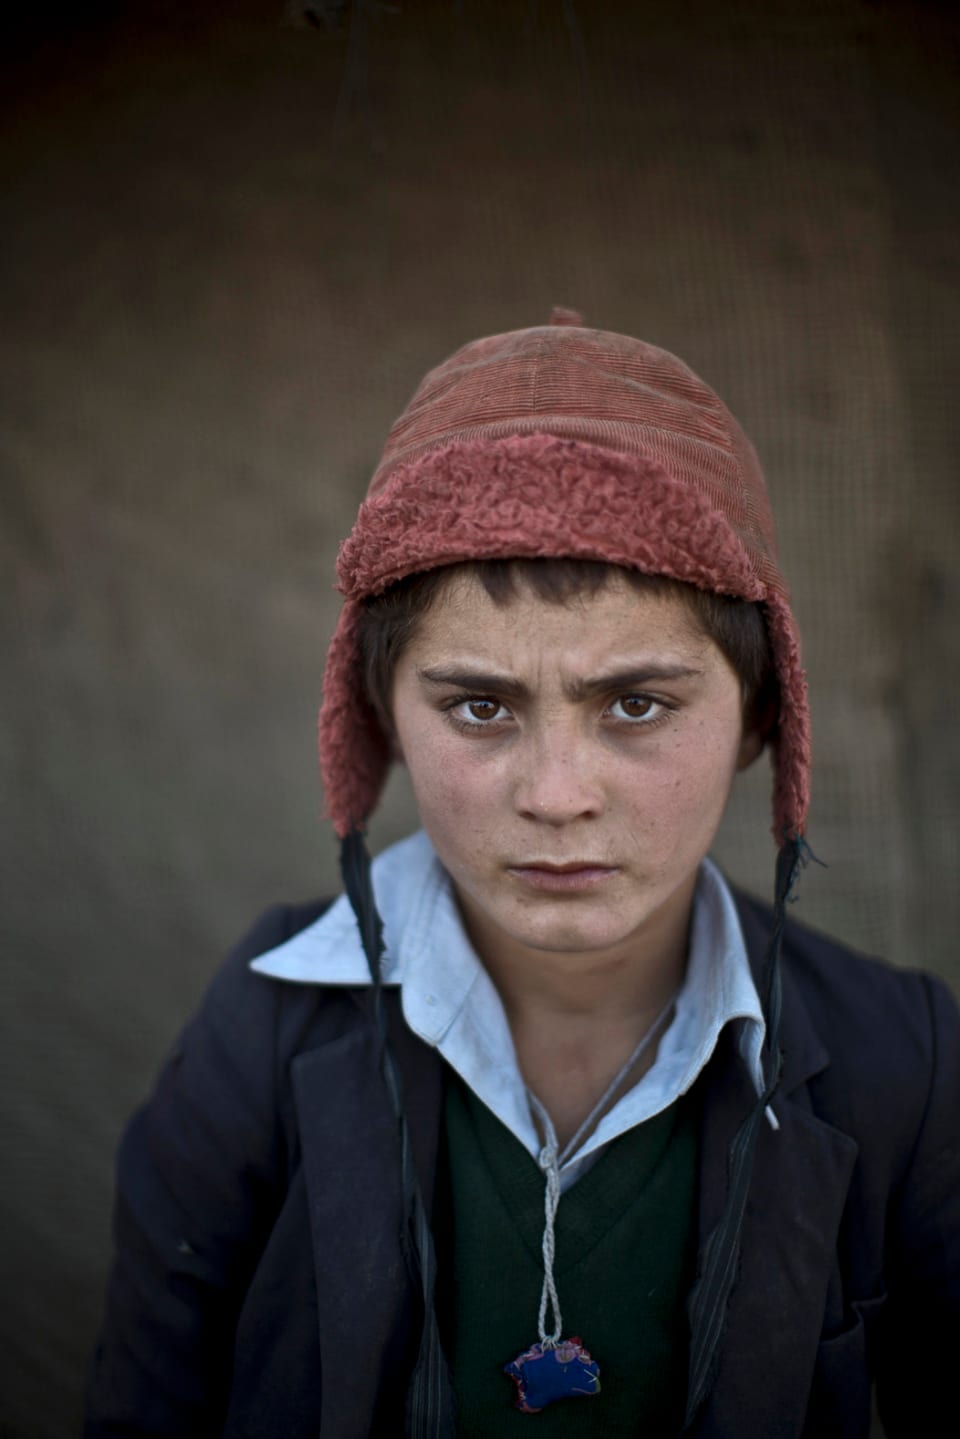 Porträt eines afghanischen Flüchtlingsknaben